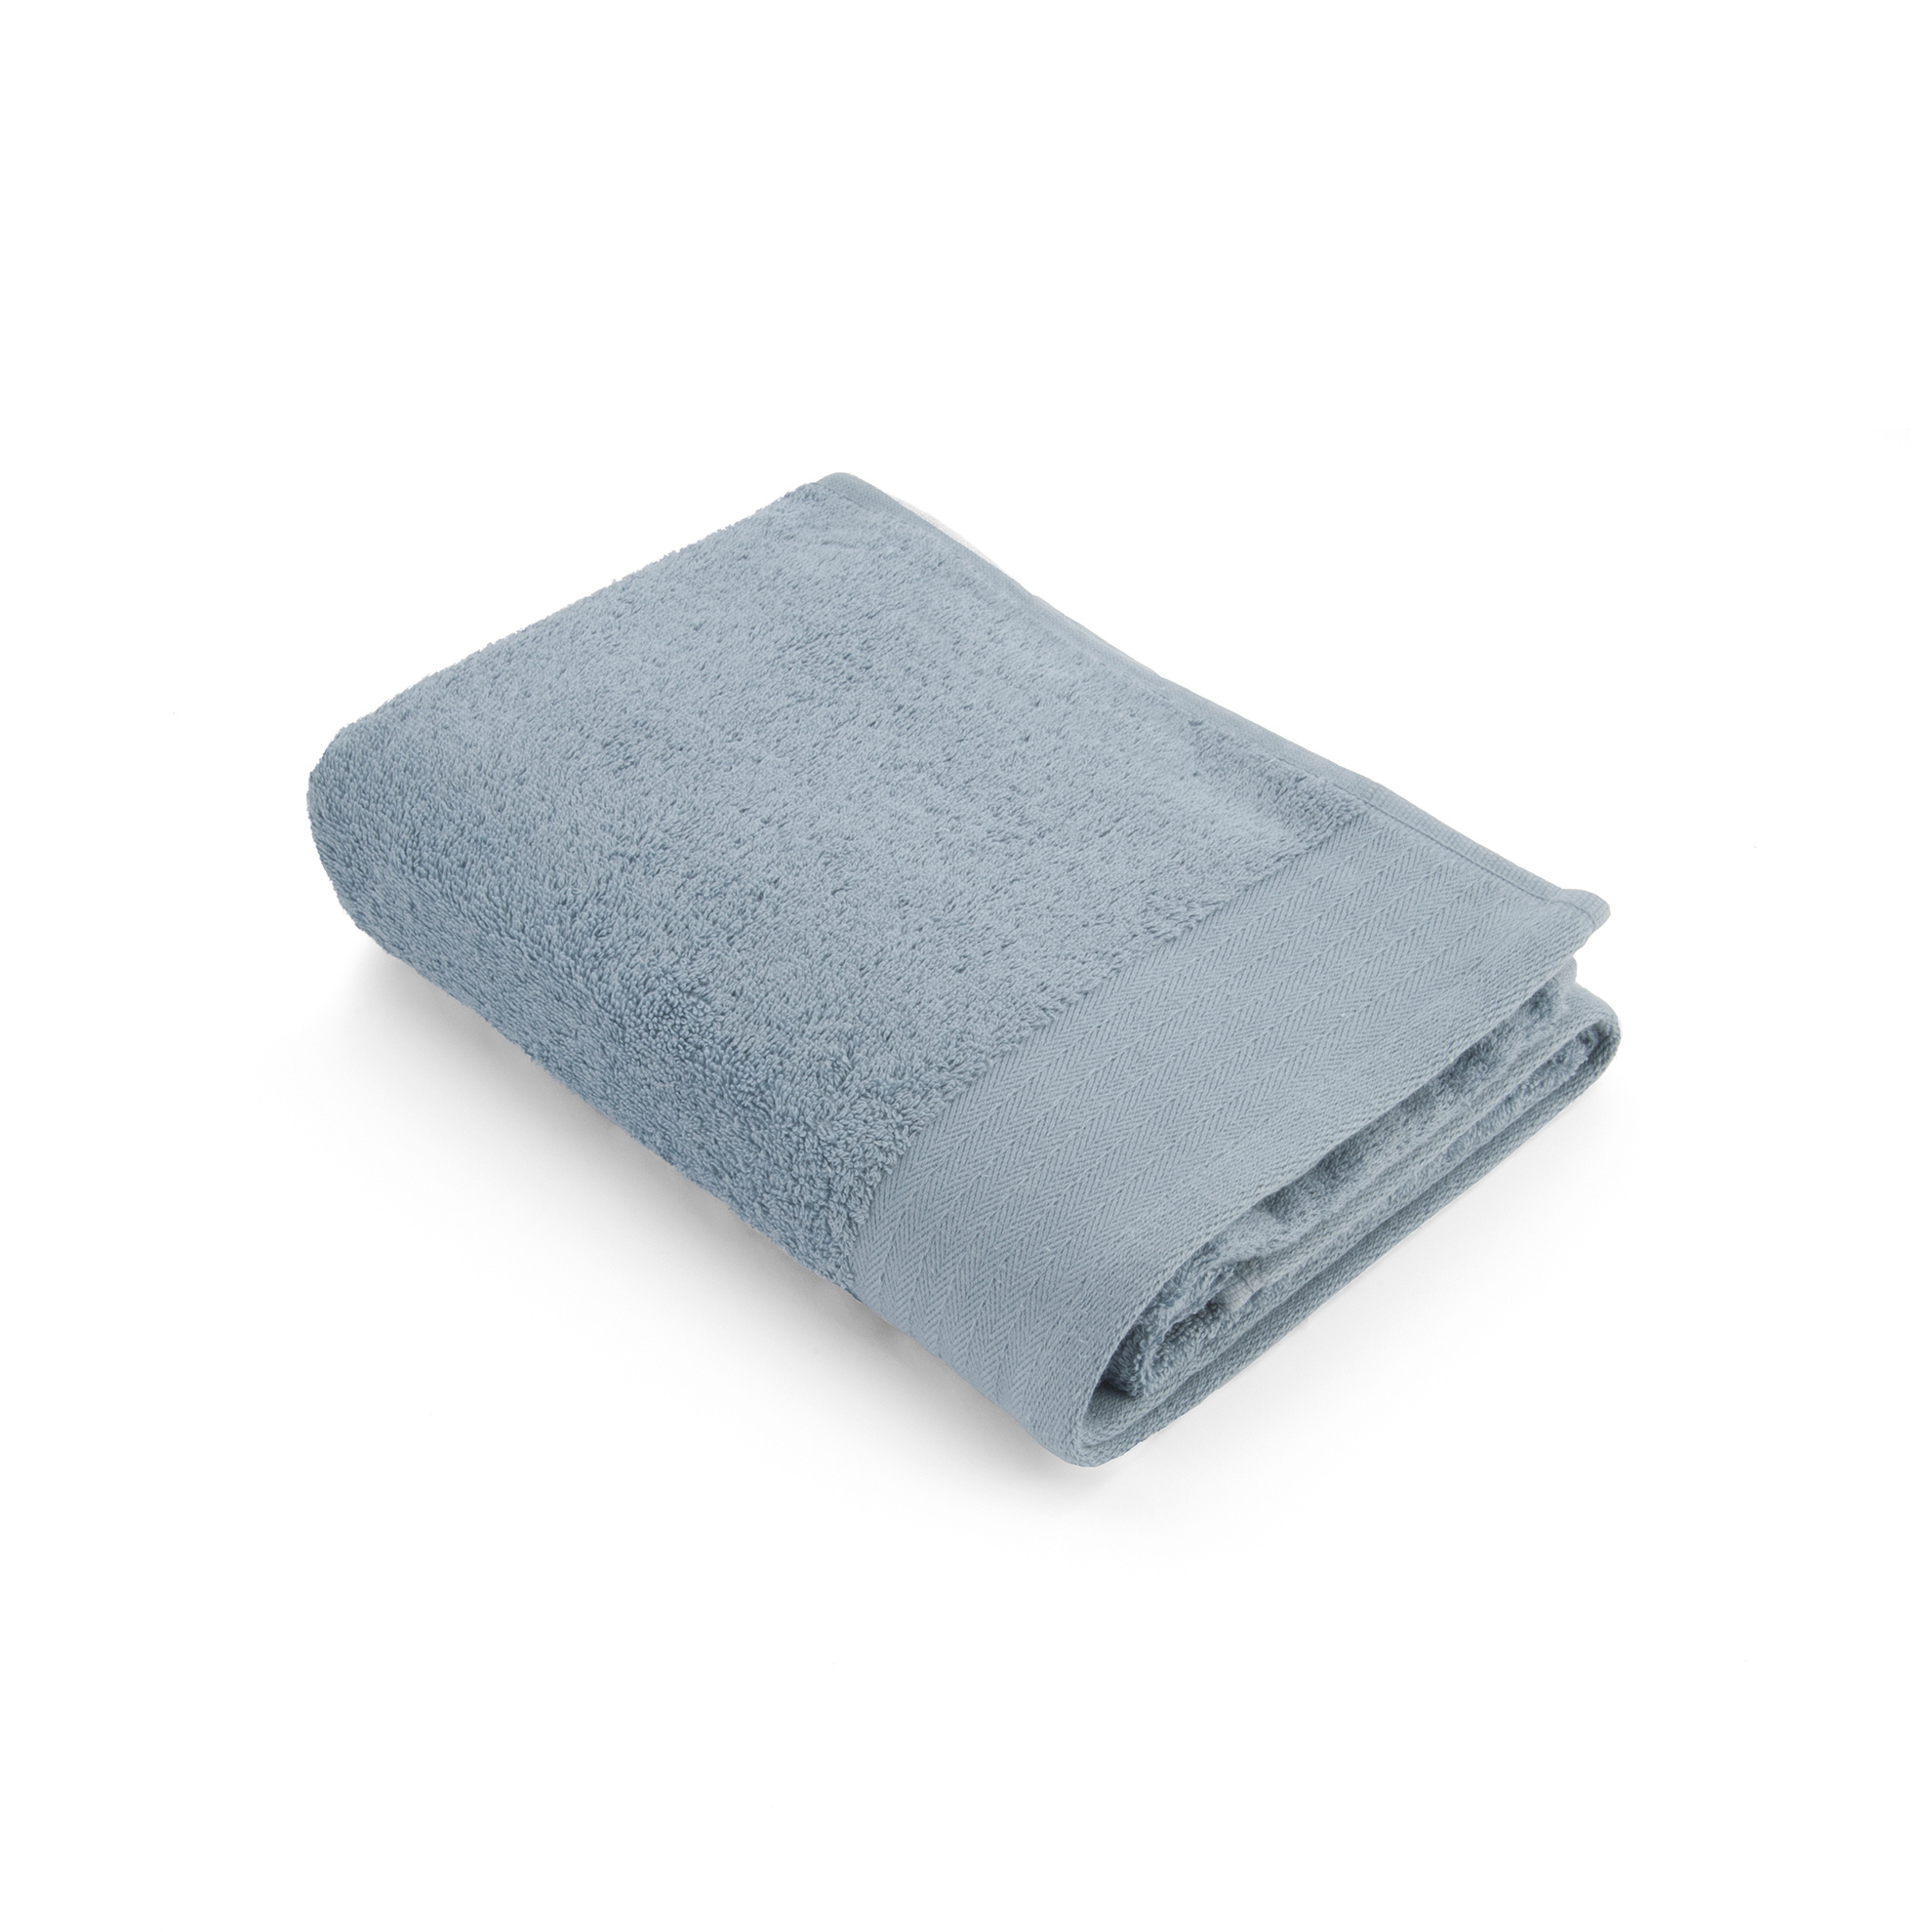 een beetje Onbepaald Rafflesia Arnoldi Walra Handdoek Blauw 60x110cm - Set van 10 - Mijn Woontextiel